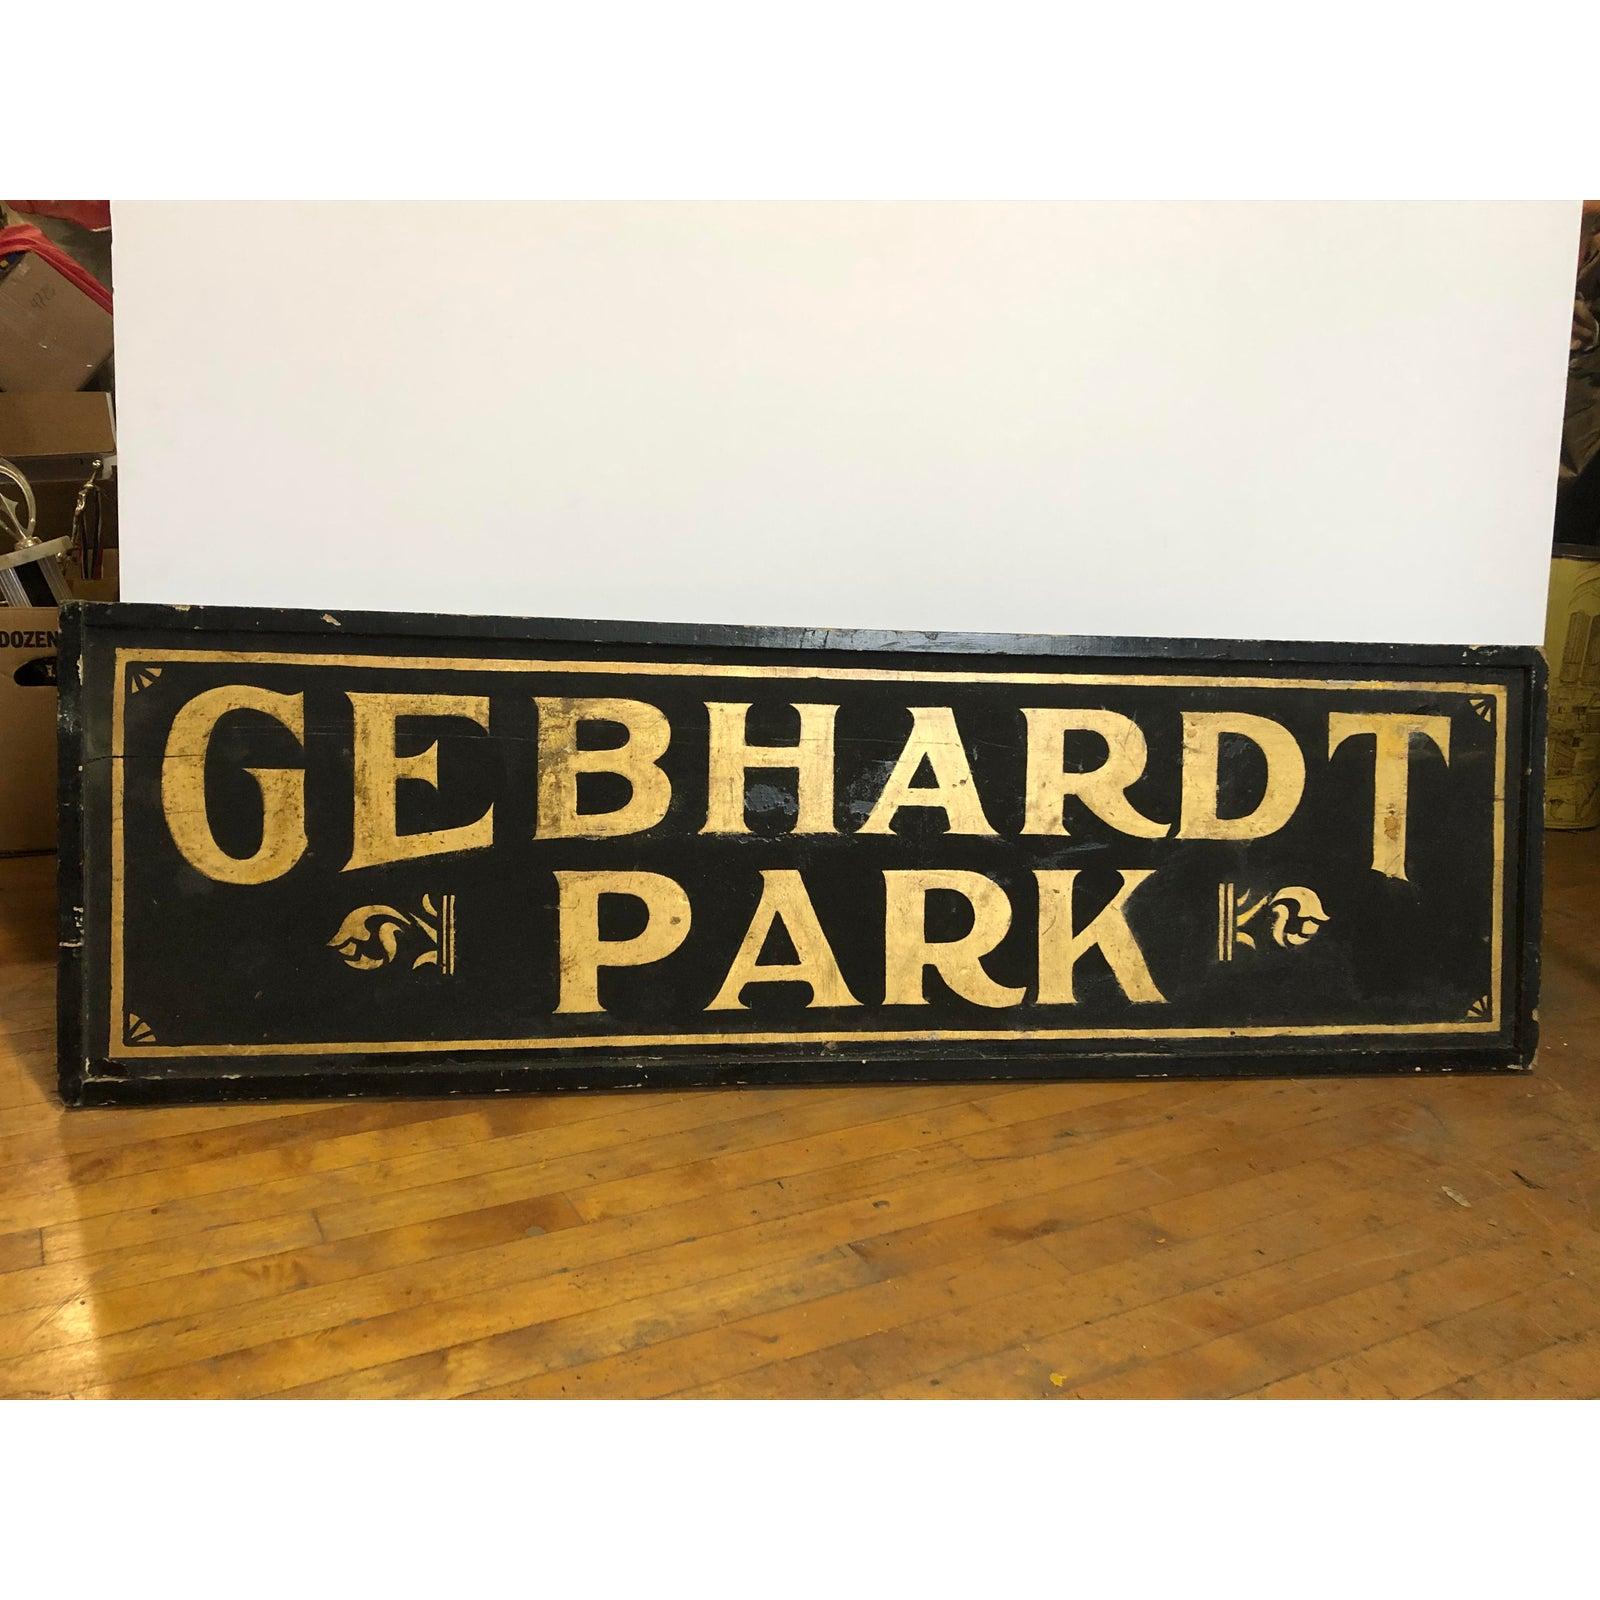 Antique gold leaf sign Gebhardt Park. Framed in original wood frame.